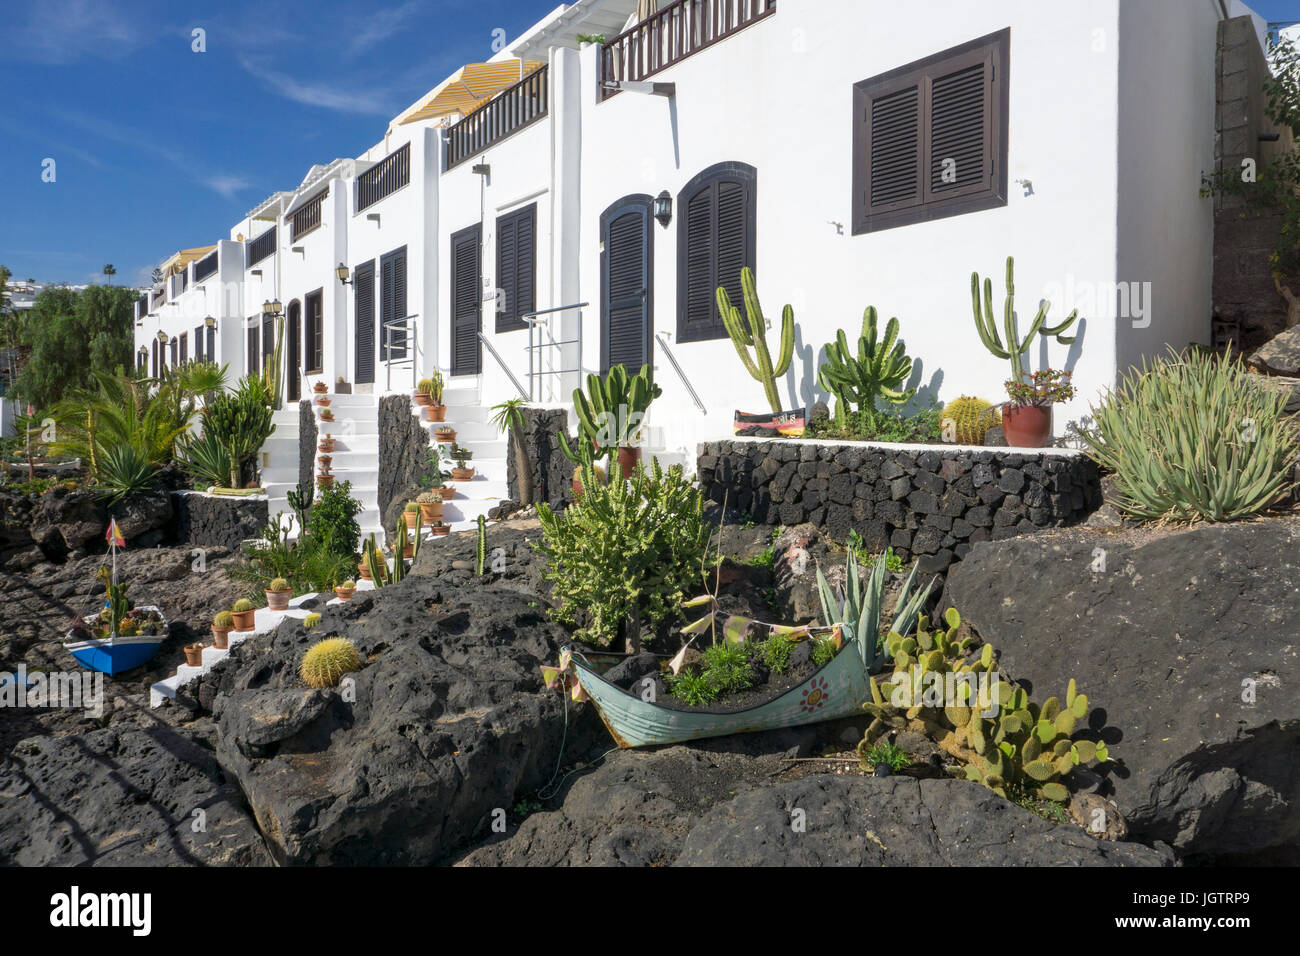 Angeln Häuser dekoriert mit Lava Vorgarten am Fischerhafen La Tinosa bei Puerto del Carmen, Lanzarote, Kanarische Inseln, Spanien, Europa Stockfoto